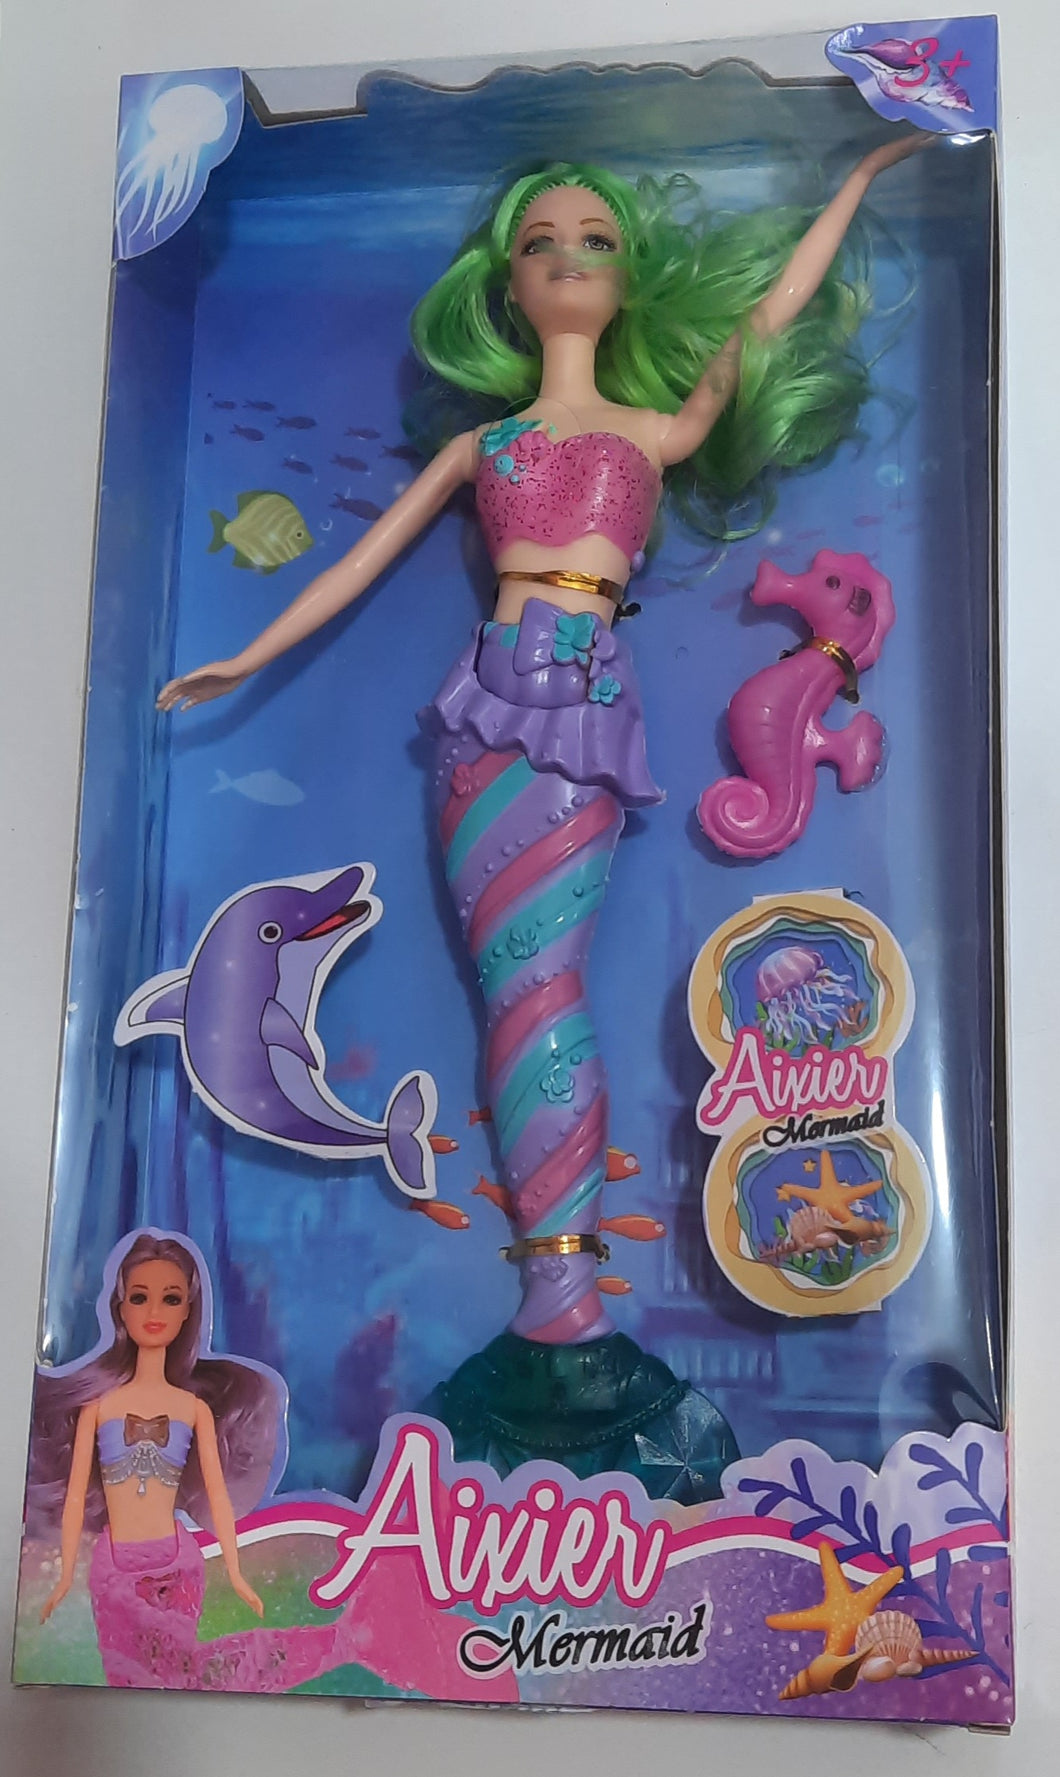 Տիկնիկ Aixier mermaid